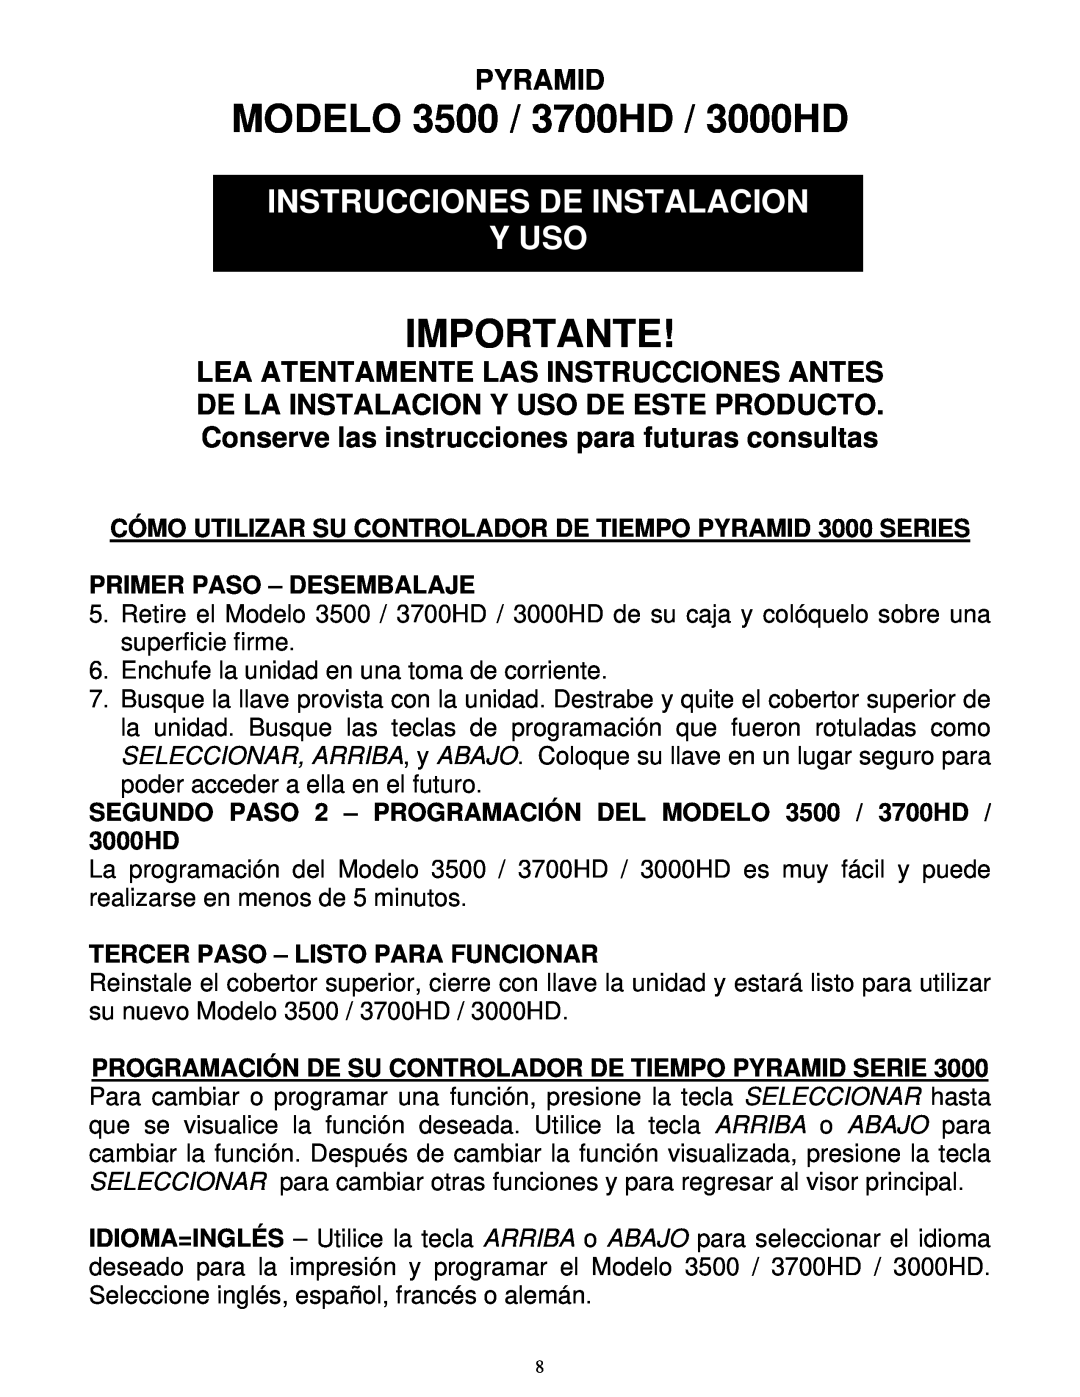 Pyramid Technologies manual MODELO 3500 / 3700HD / 3000HD, Importante, Instrucciones De Instalacion Y Uso, Pyramid 